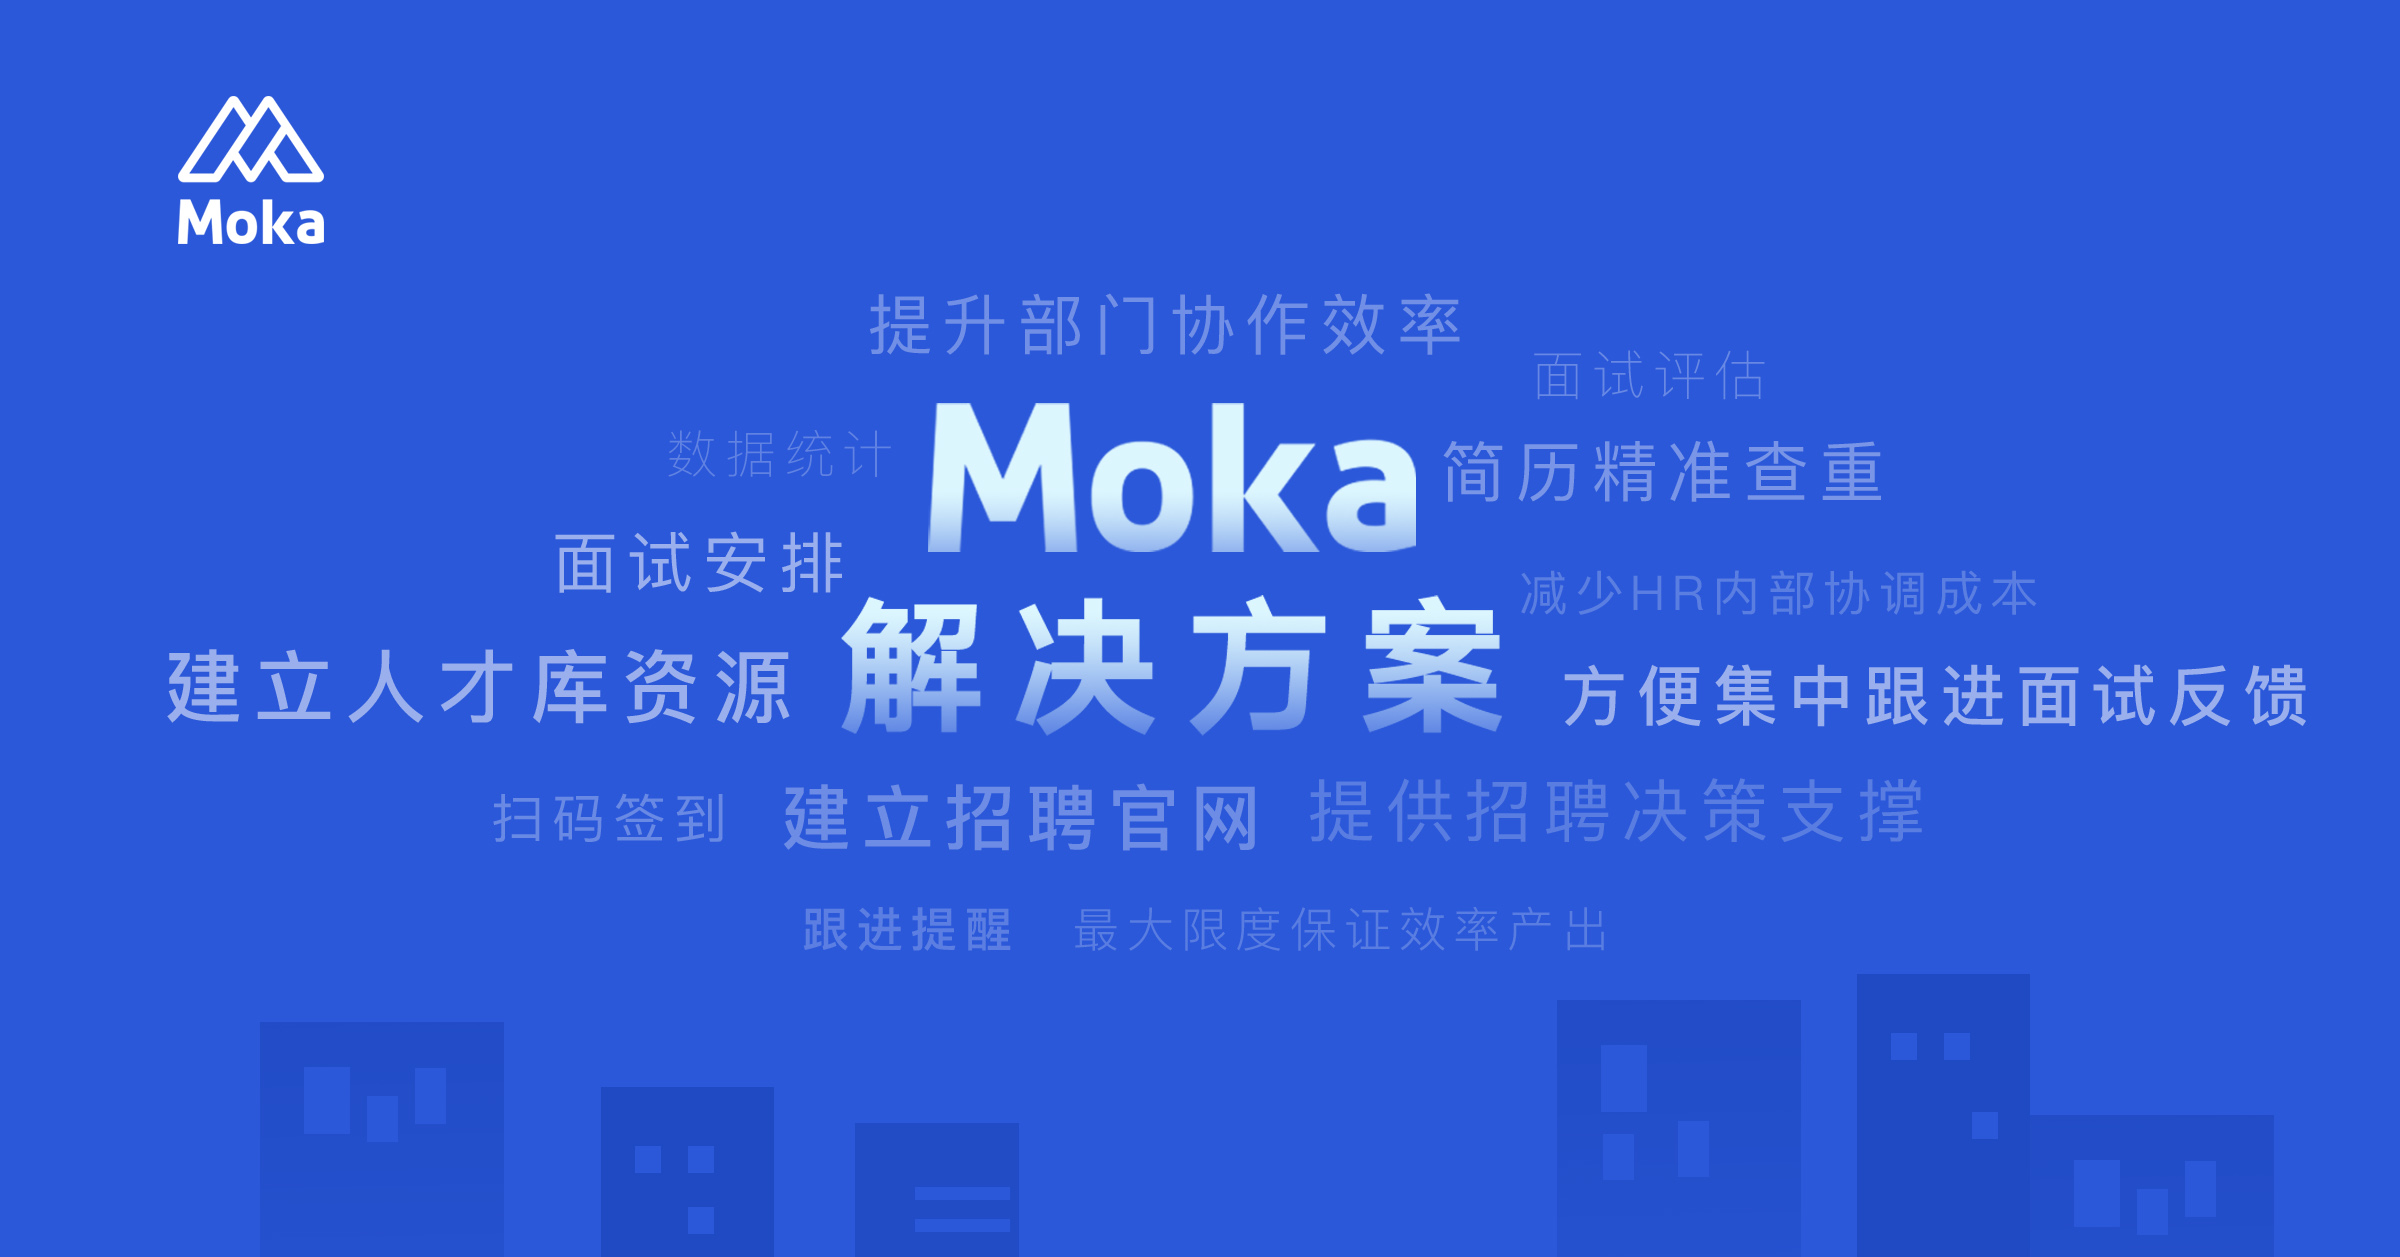 「探探」招聘解决方案-整合资源，促进协同-Moka智能化招聘系统